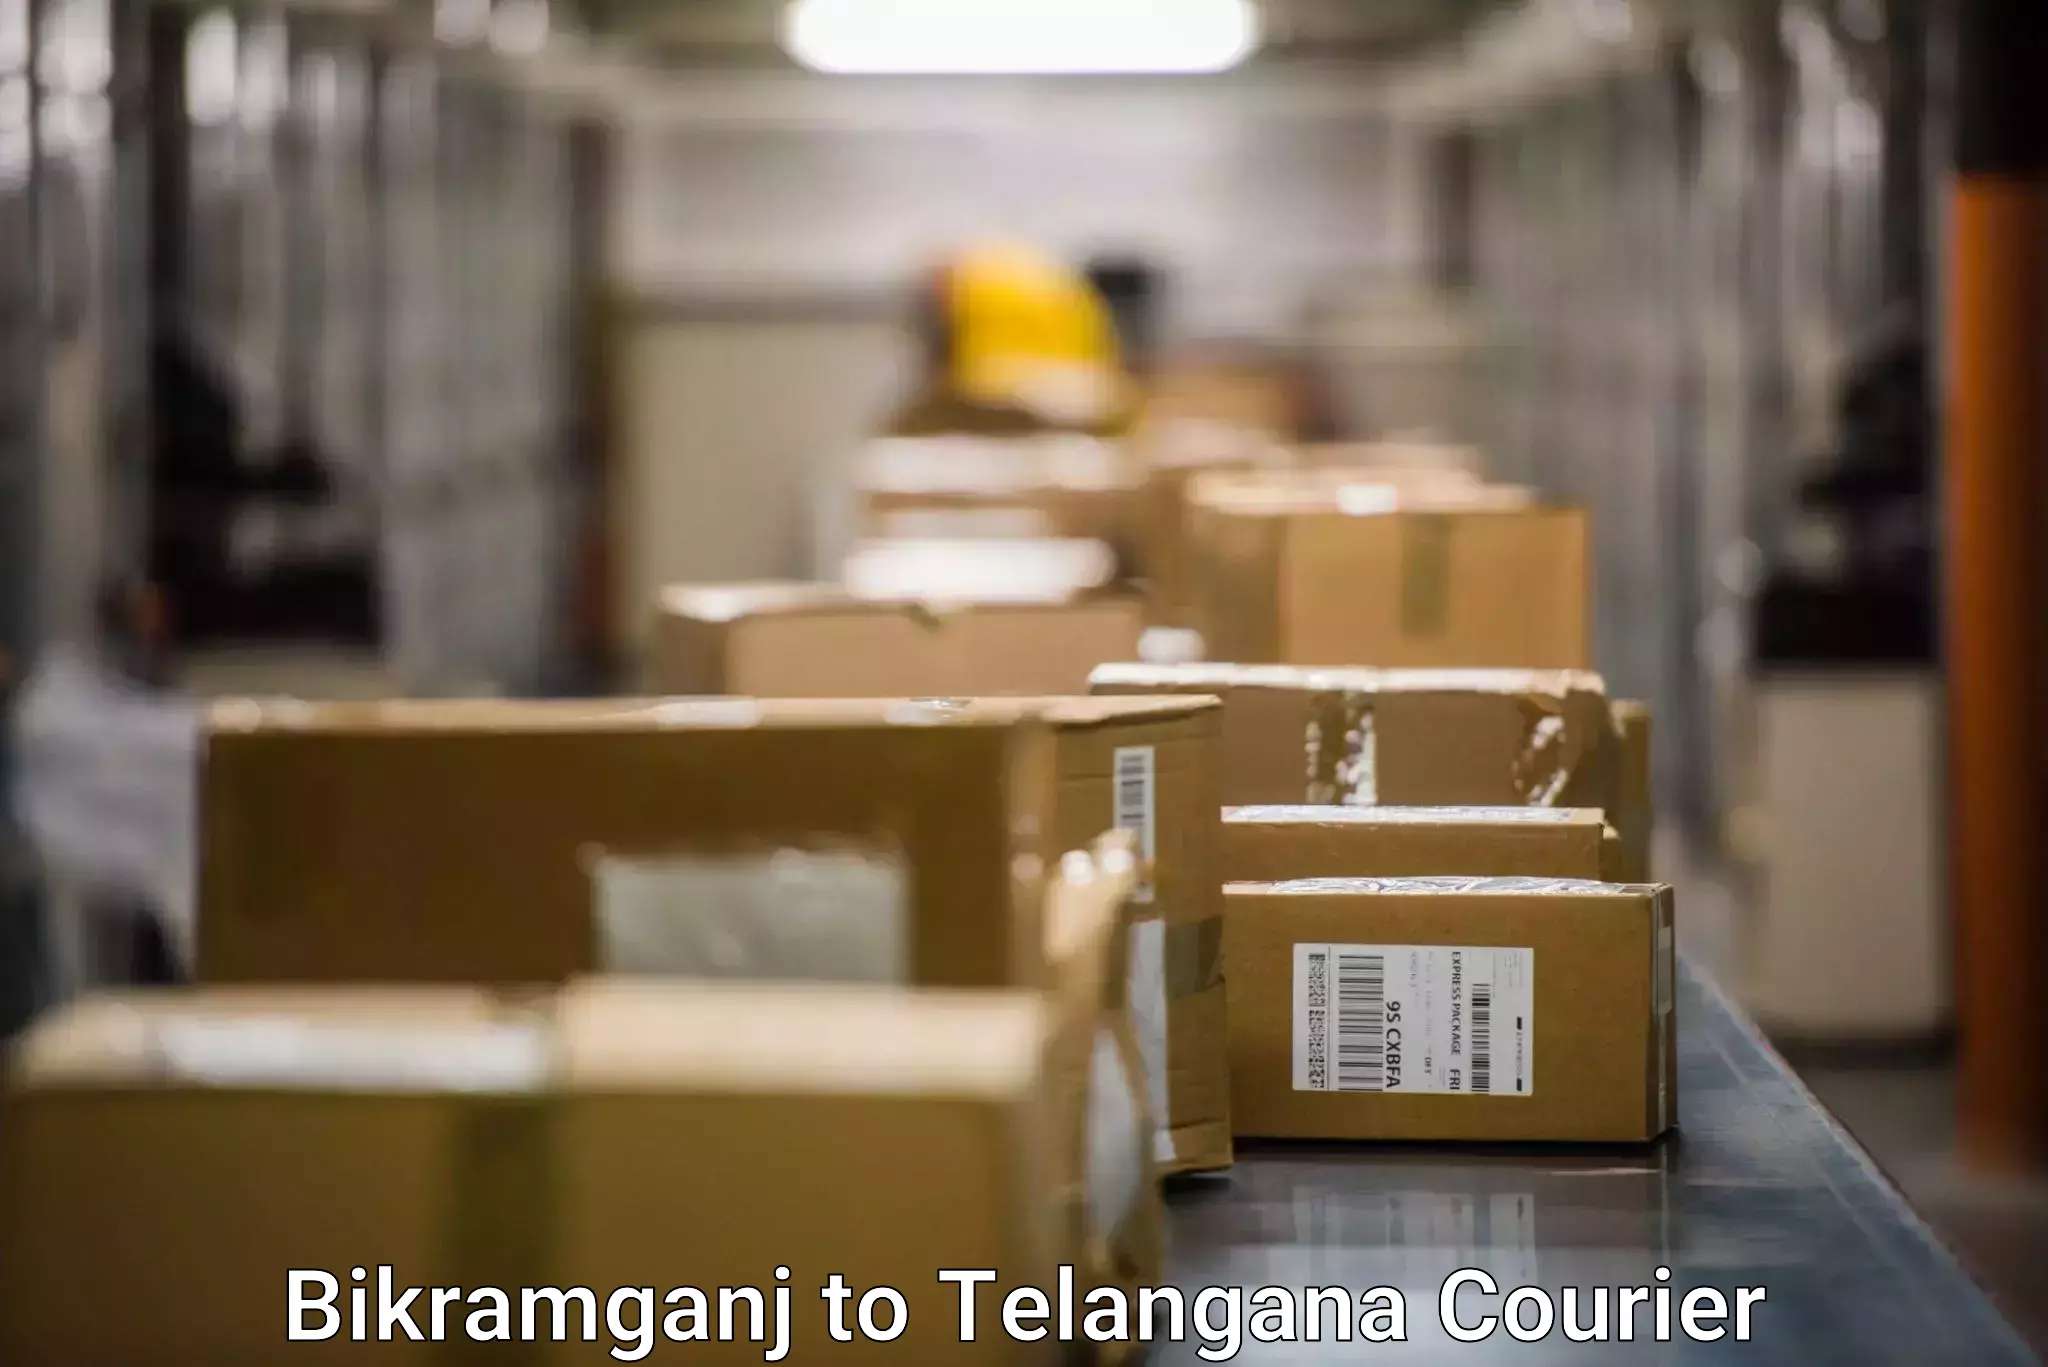 Cash on delivery service Bikramganj to Warangal